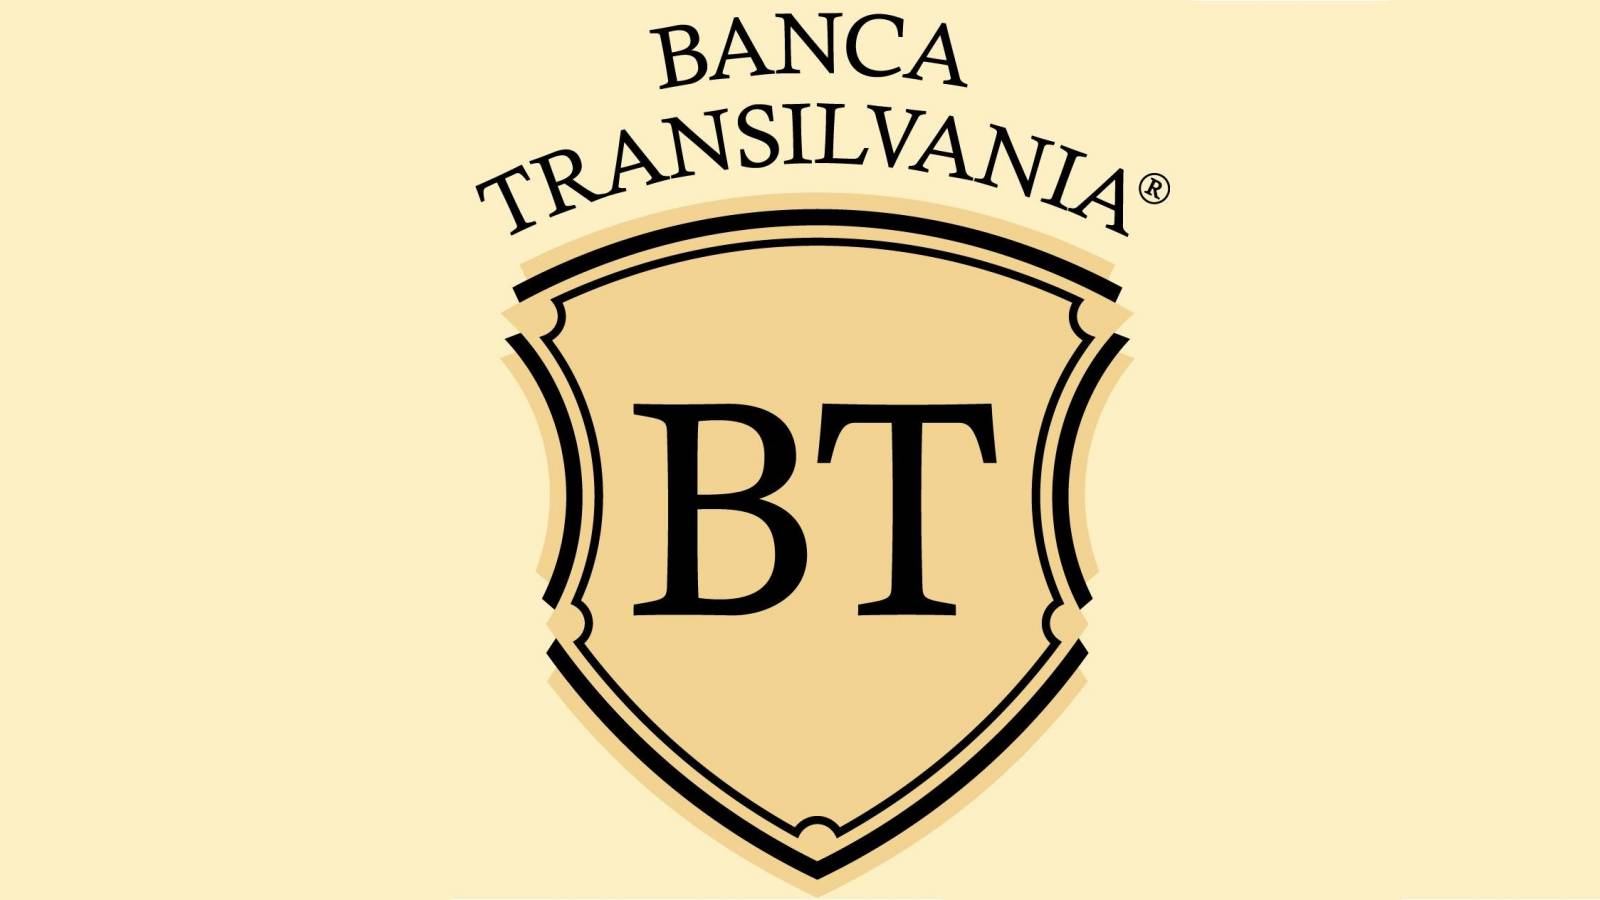 Brigada BANCA Transilvania